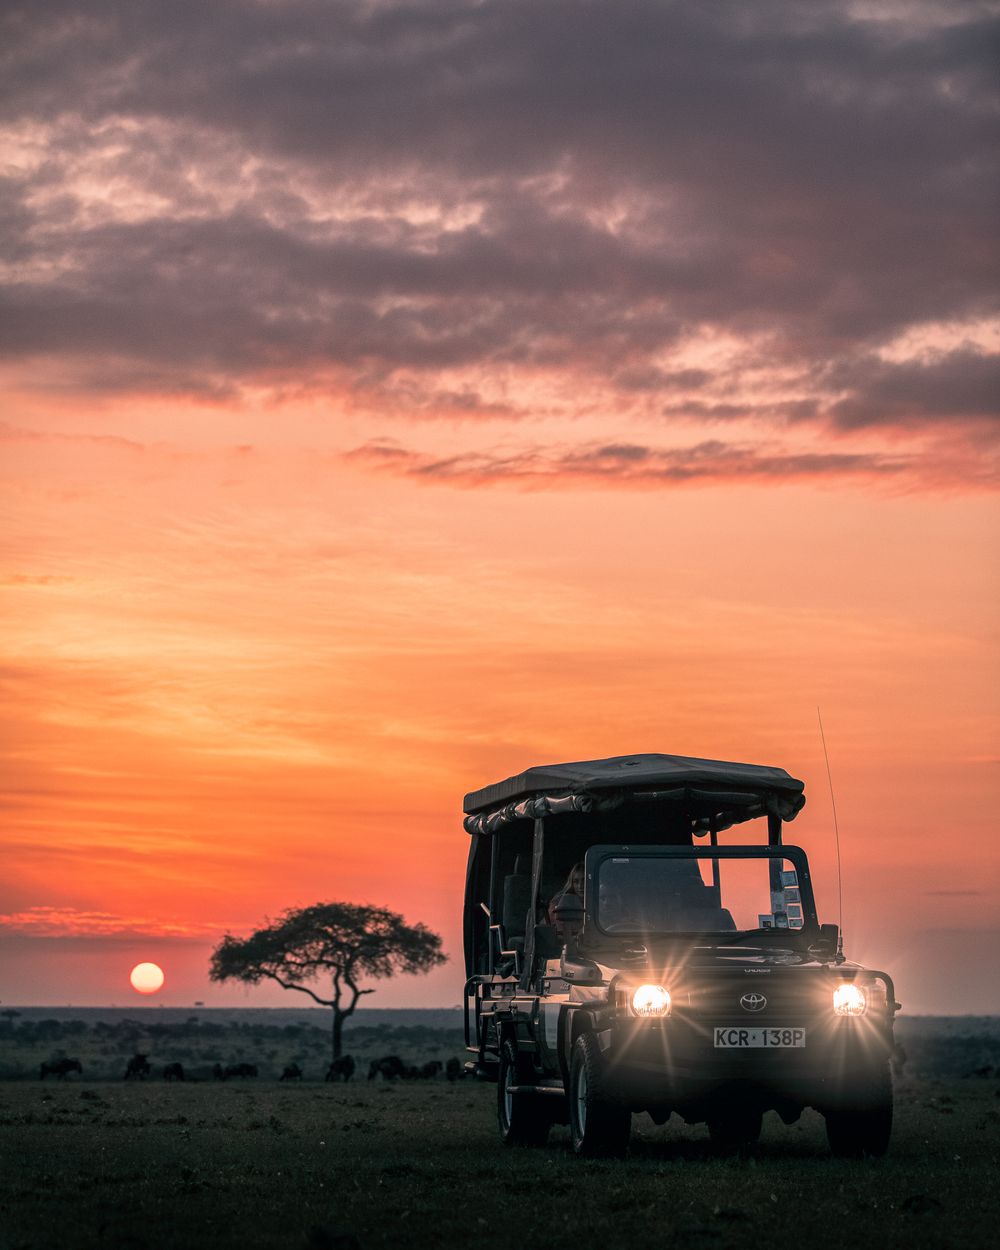 Best Masai Mara Camps for Safari in Kenya